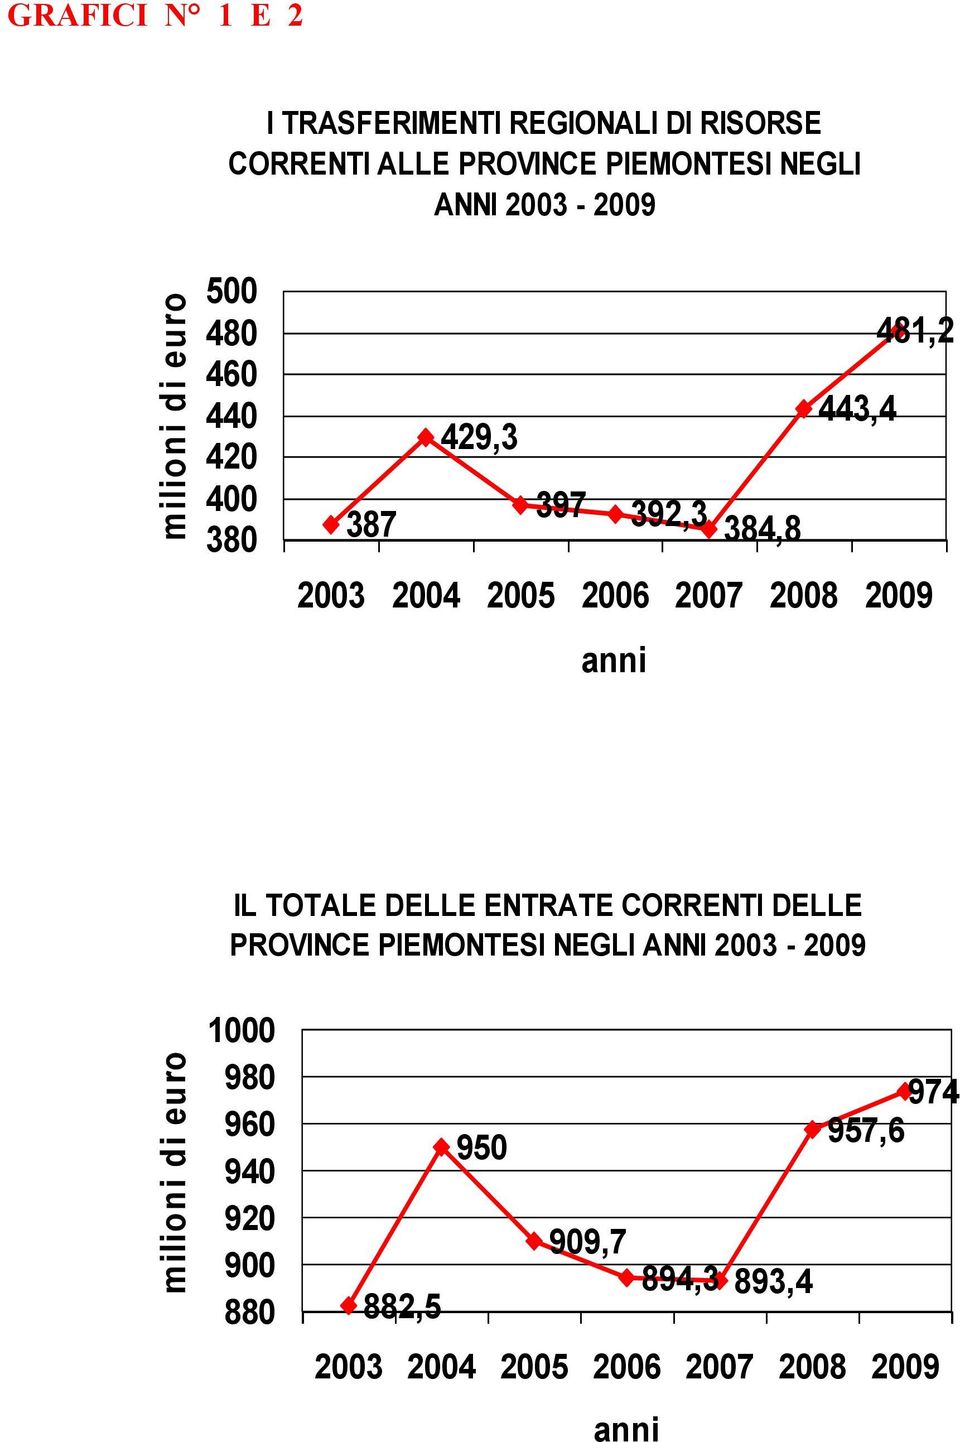 2008 2009 anni IL TOTALE DELLE ENTRATE CORRENTI DELLE PROVINCE PIEMONTESI NEGLI ANNI 2003-2009 milioni di